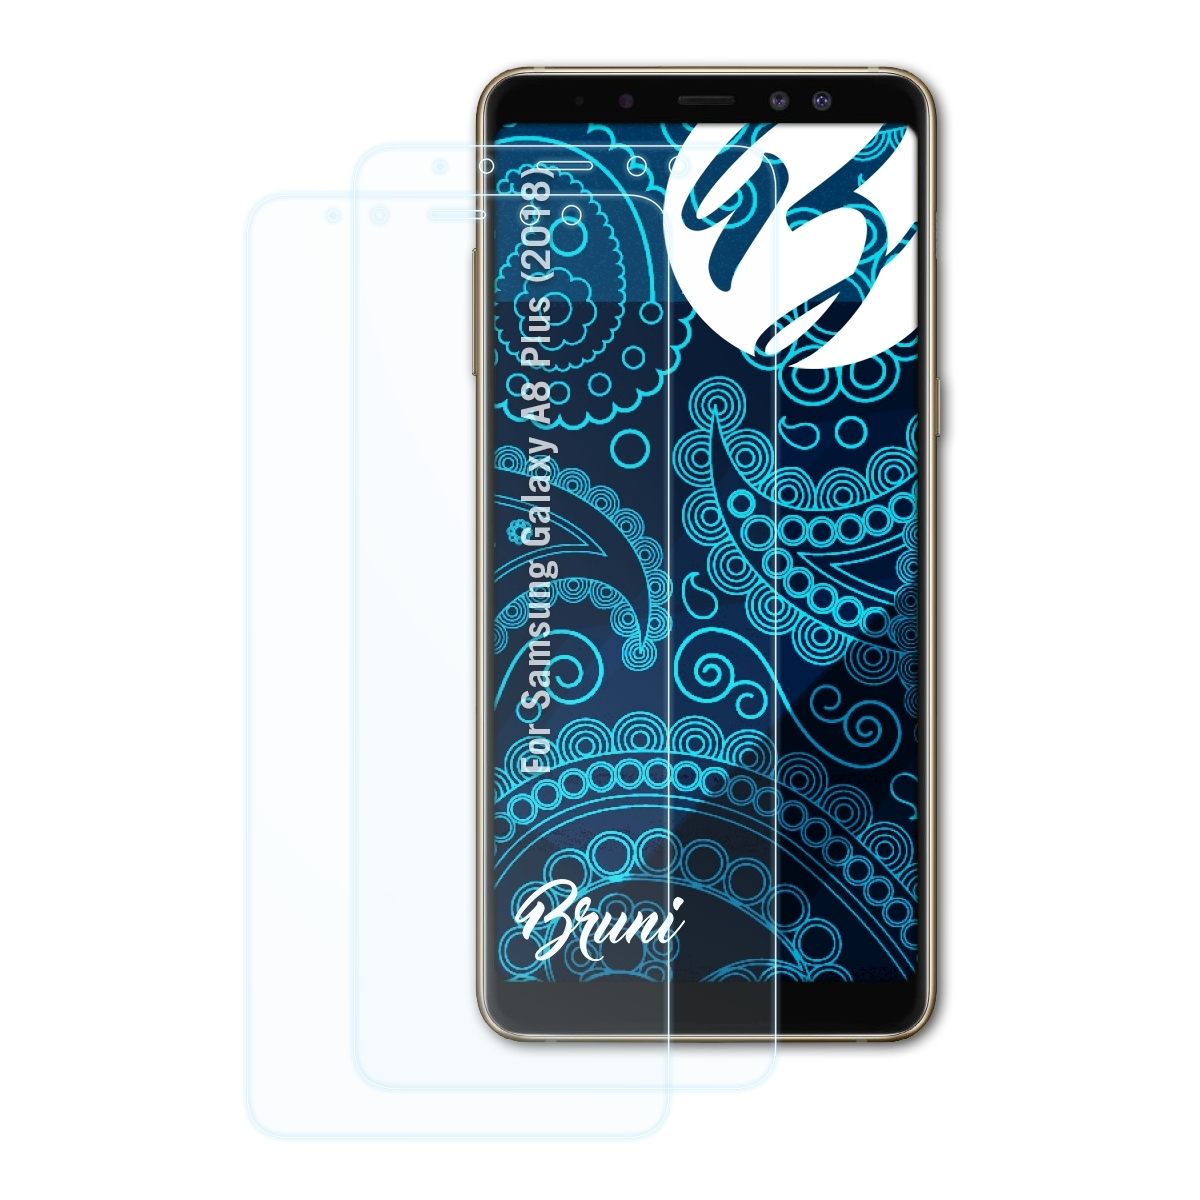 BRUNI 2x Basics-Clear Schutzfolie(für Samsung Plus Galaxy A8 (2018))